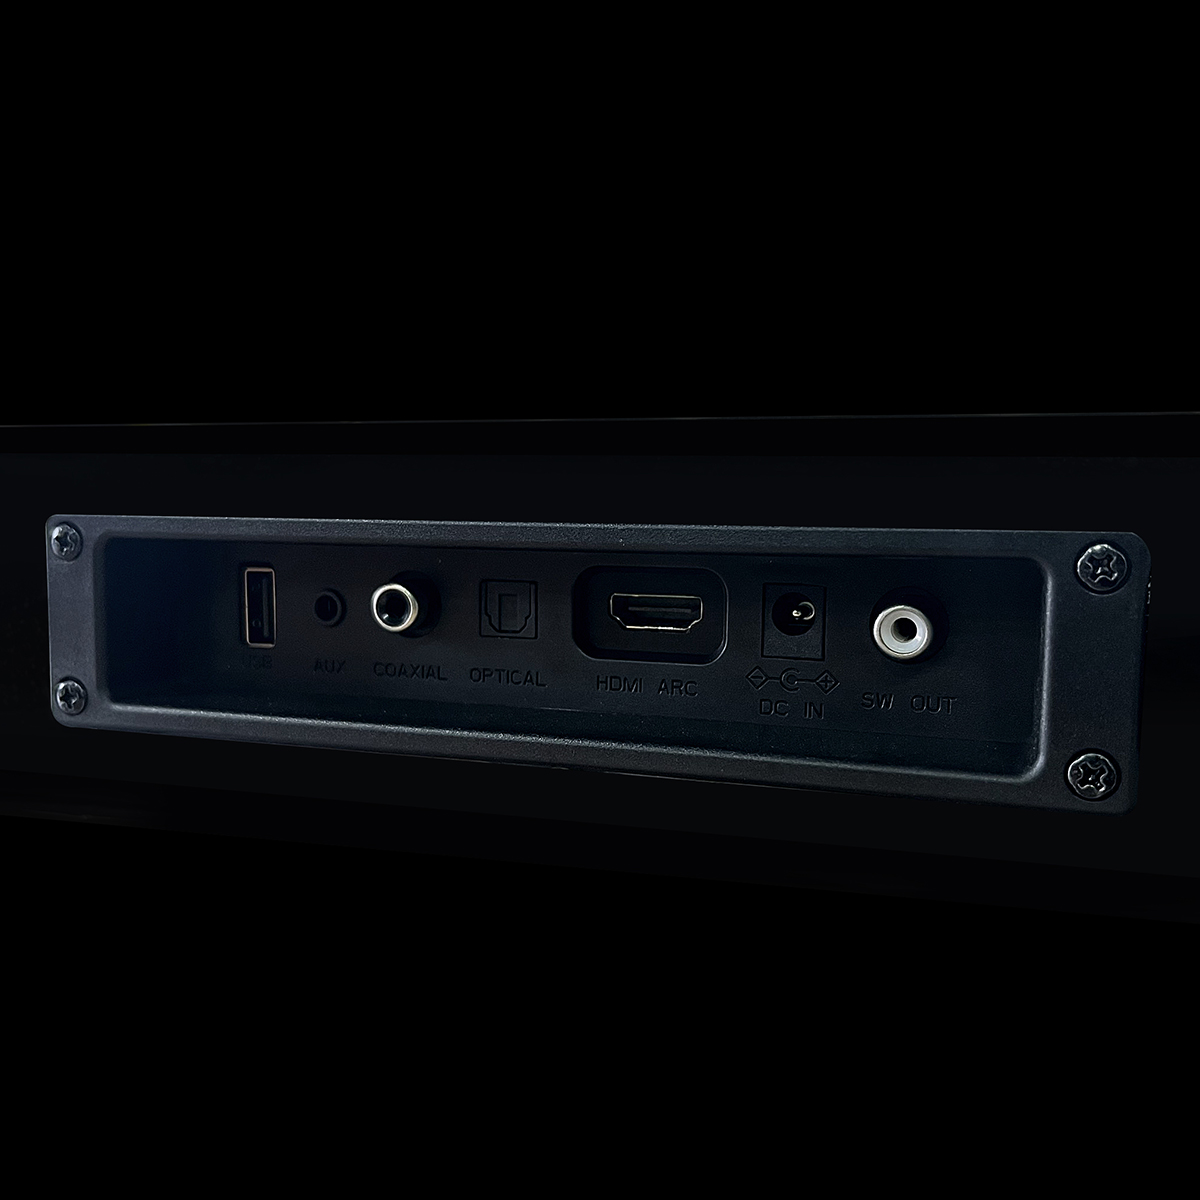 Loa Bluetooth Soundbar 100W Remax RTS-60 2.1 Deep Bass - Trang bị loa siêu trầm không dây - HÀNG CHÍNH HÃNG Remax  - Bảo Hành 1 Đổi 1 Trong 12 Tháng